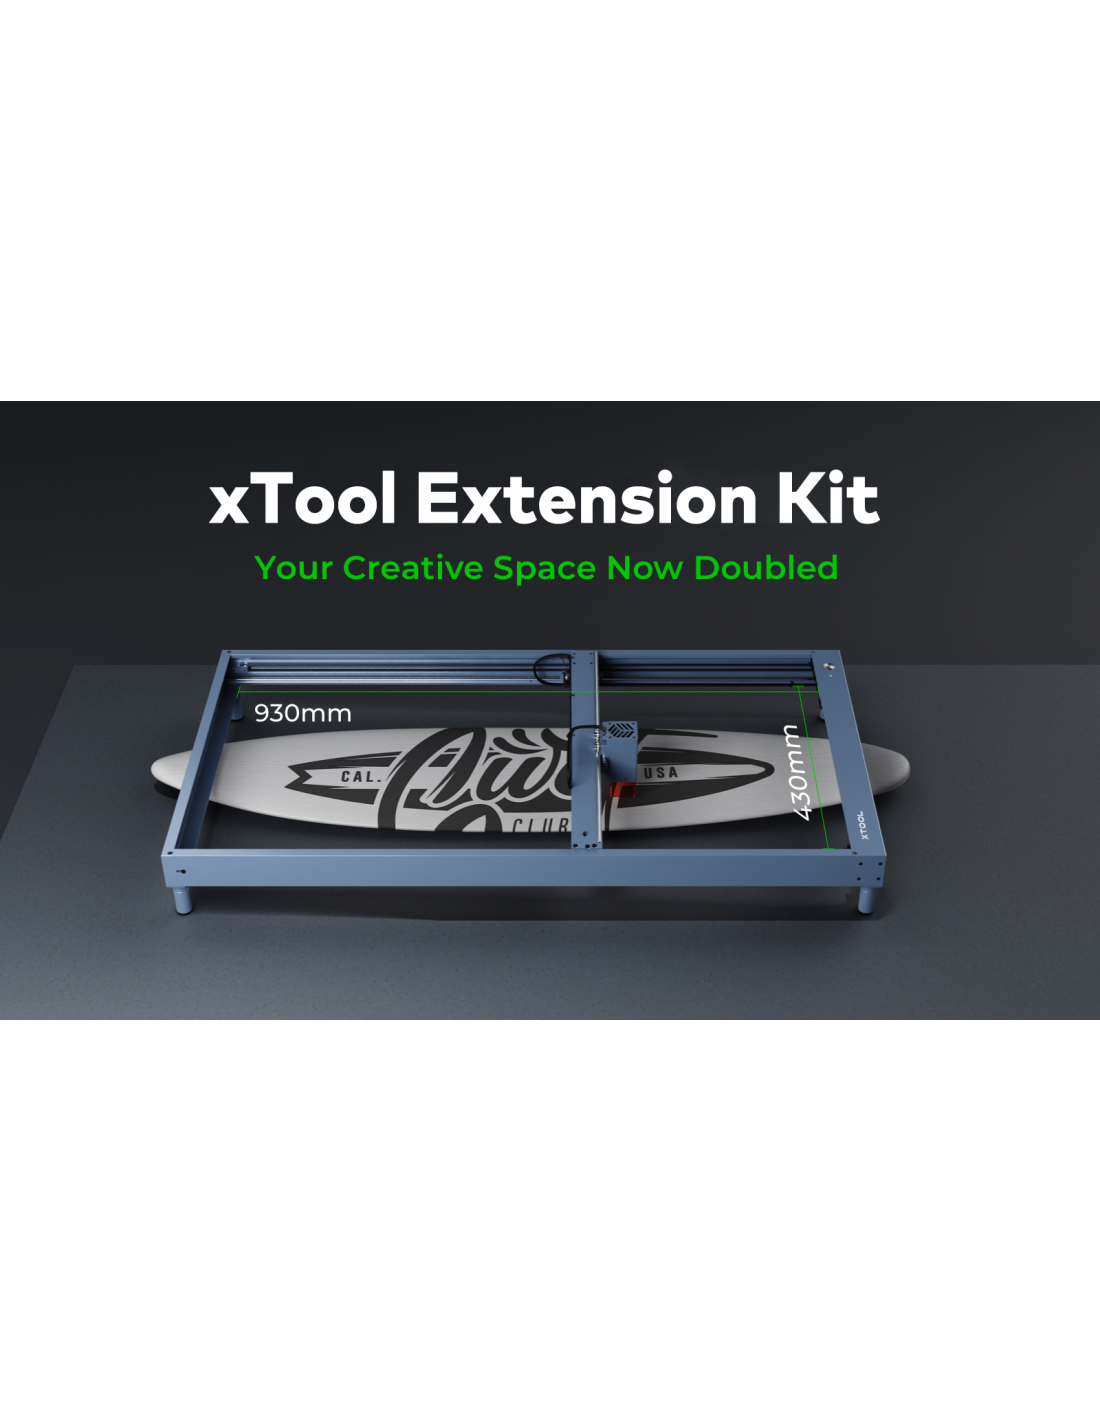 Kit de extensão xTool D1